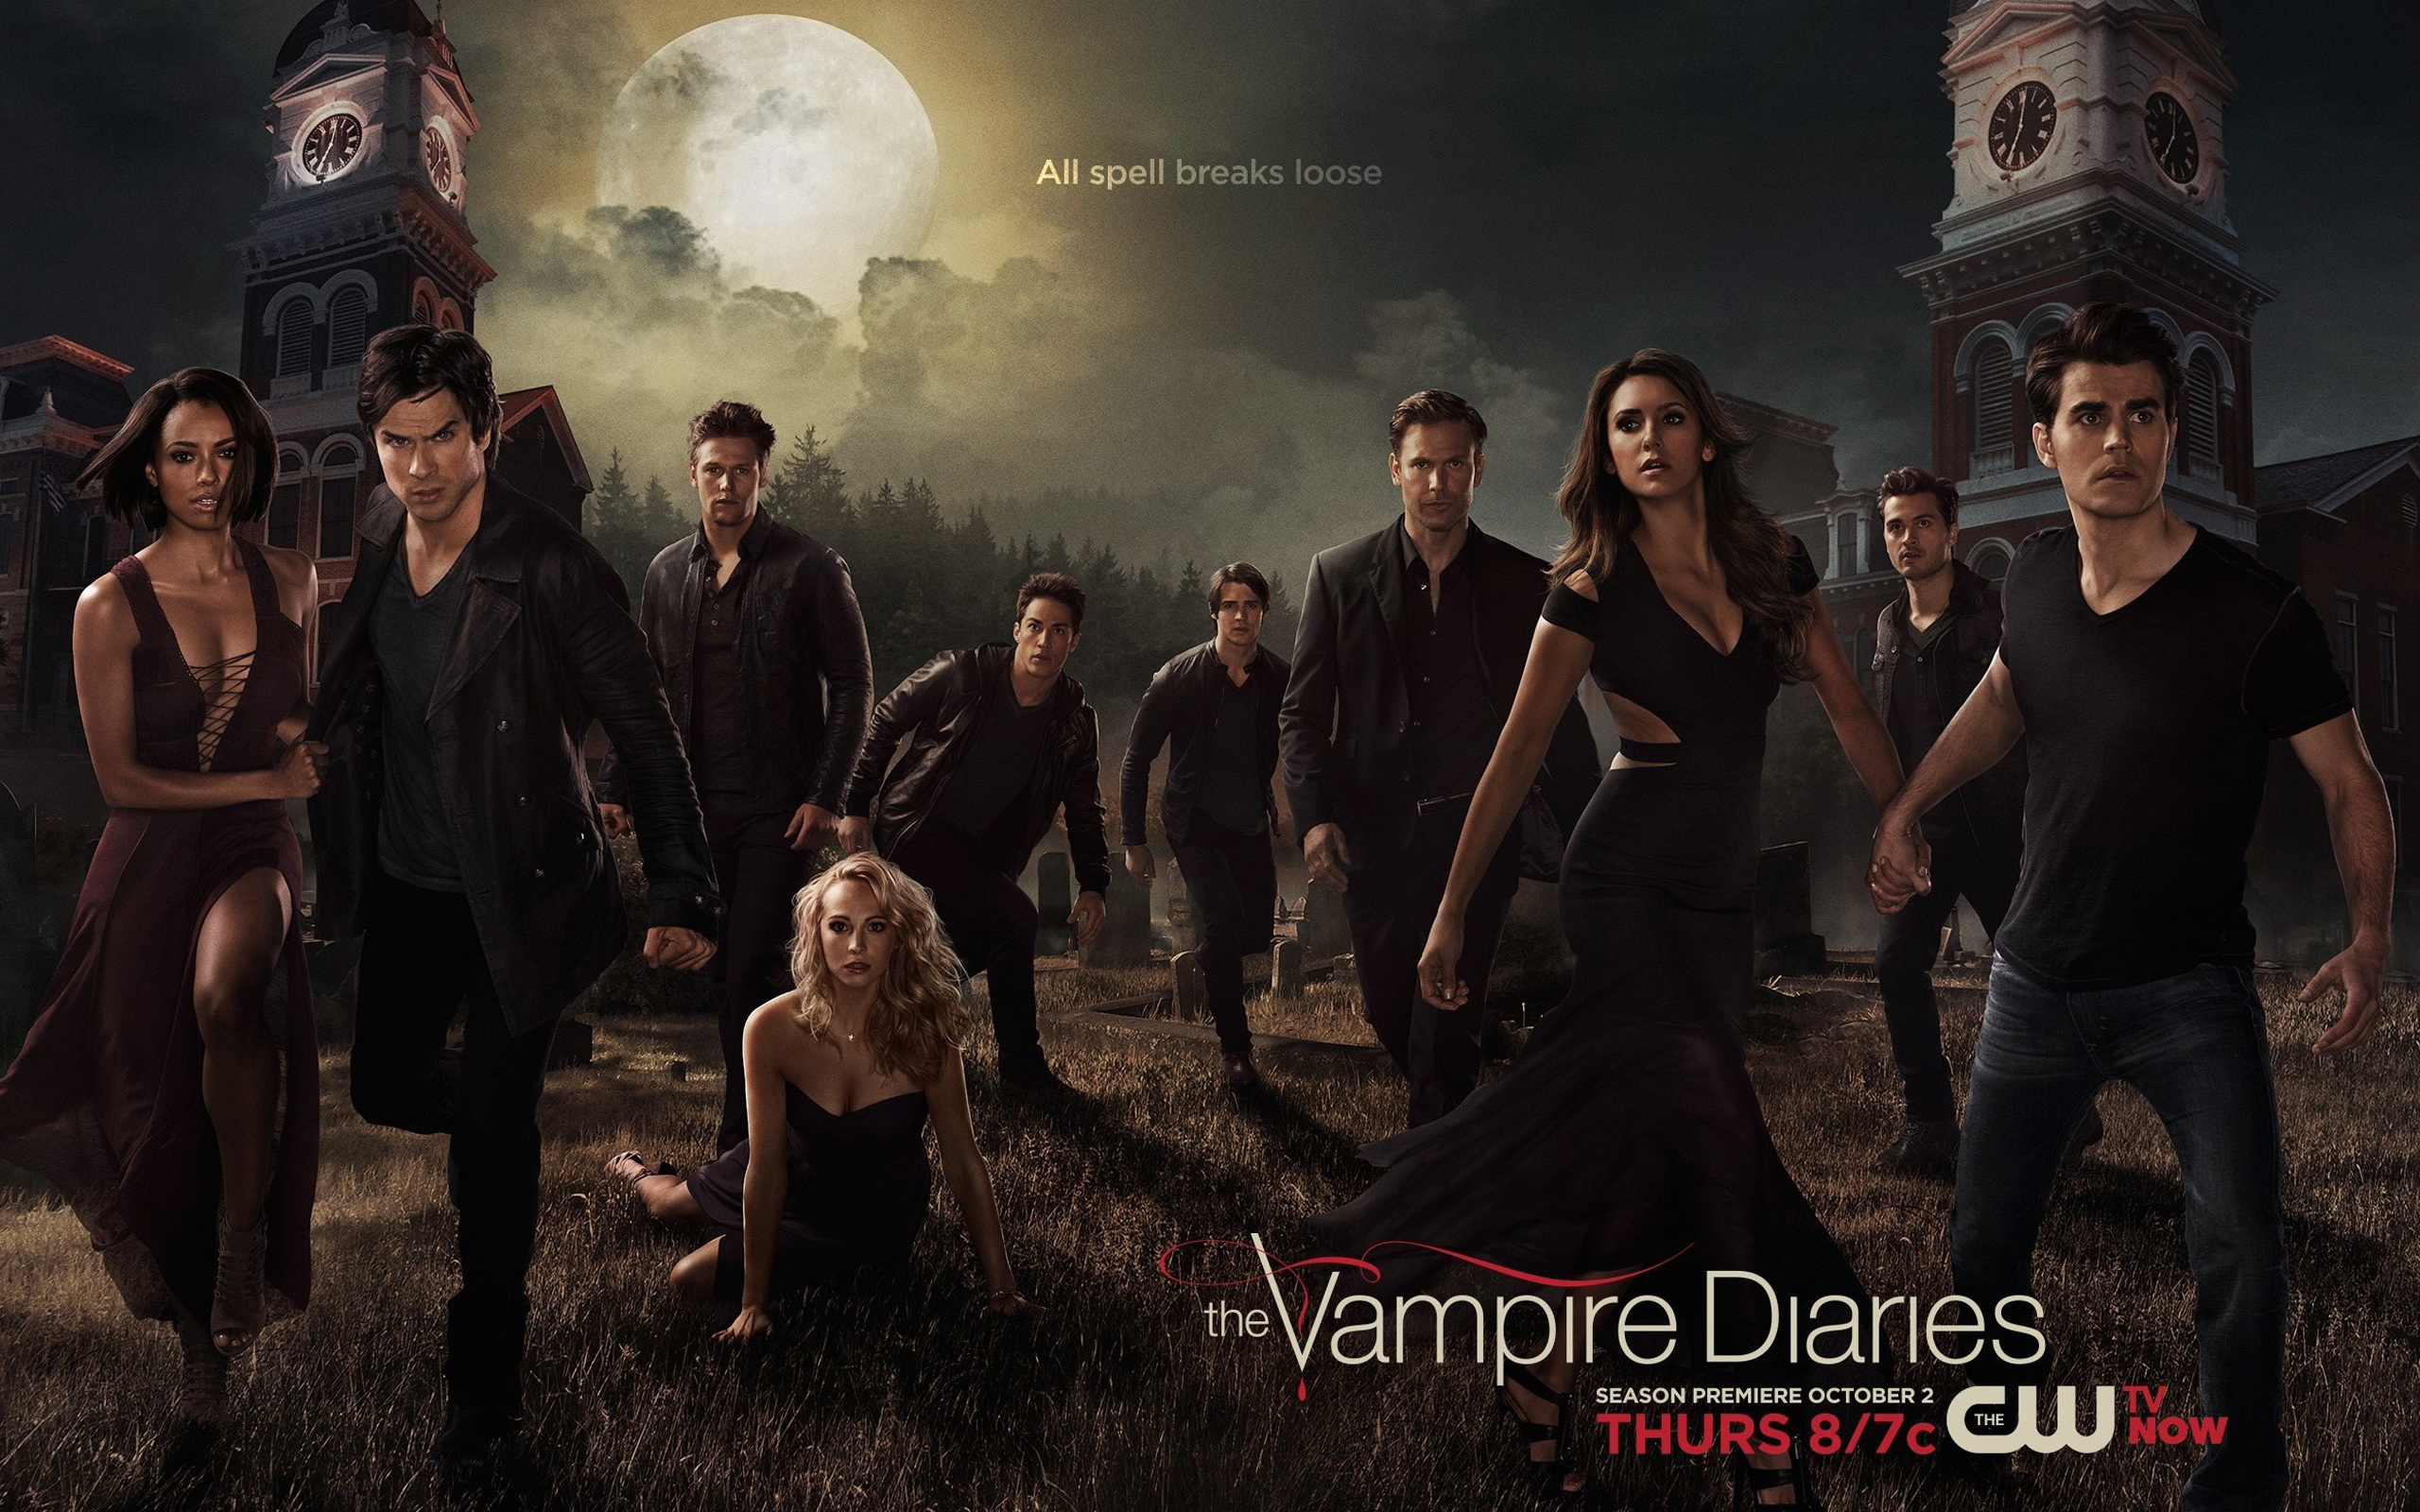 Vampire Diaries HD Wallpaper